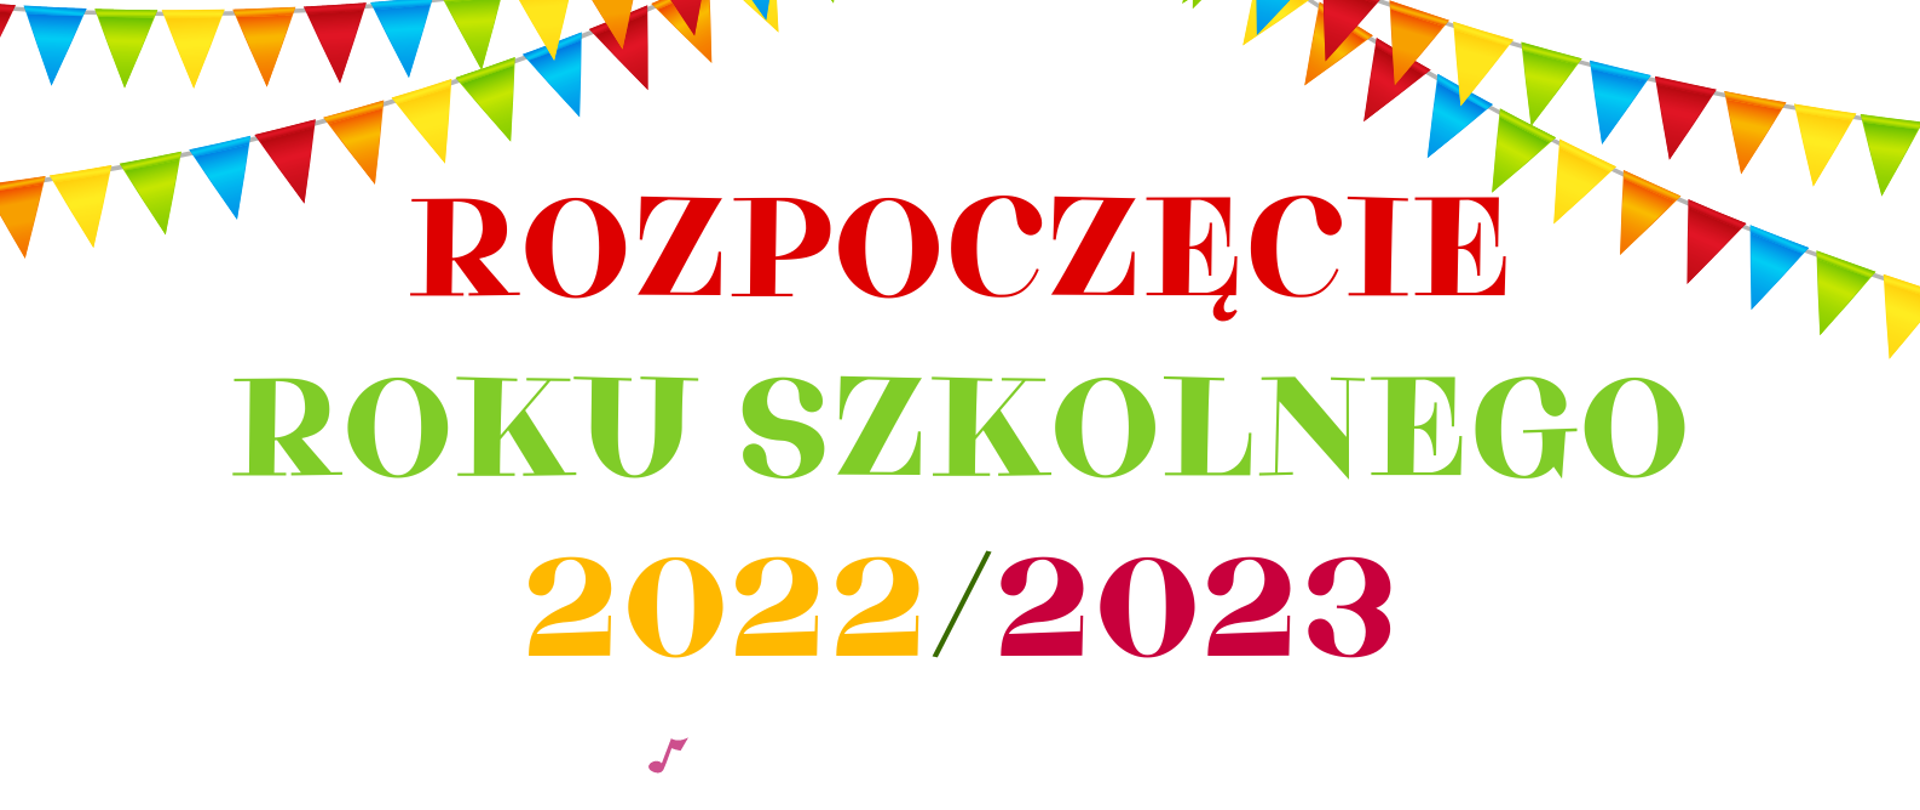 Biało-zielony plakat na rozpoczęcie roku szkolnego 2022/23 z elementami graficznymi dzieci grających na instrumentach i informacją o dacie rozpoczęcia roku - 01.09.2022 godz. 14.00